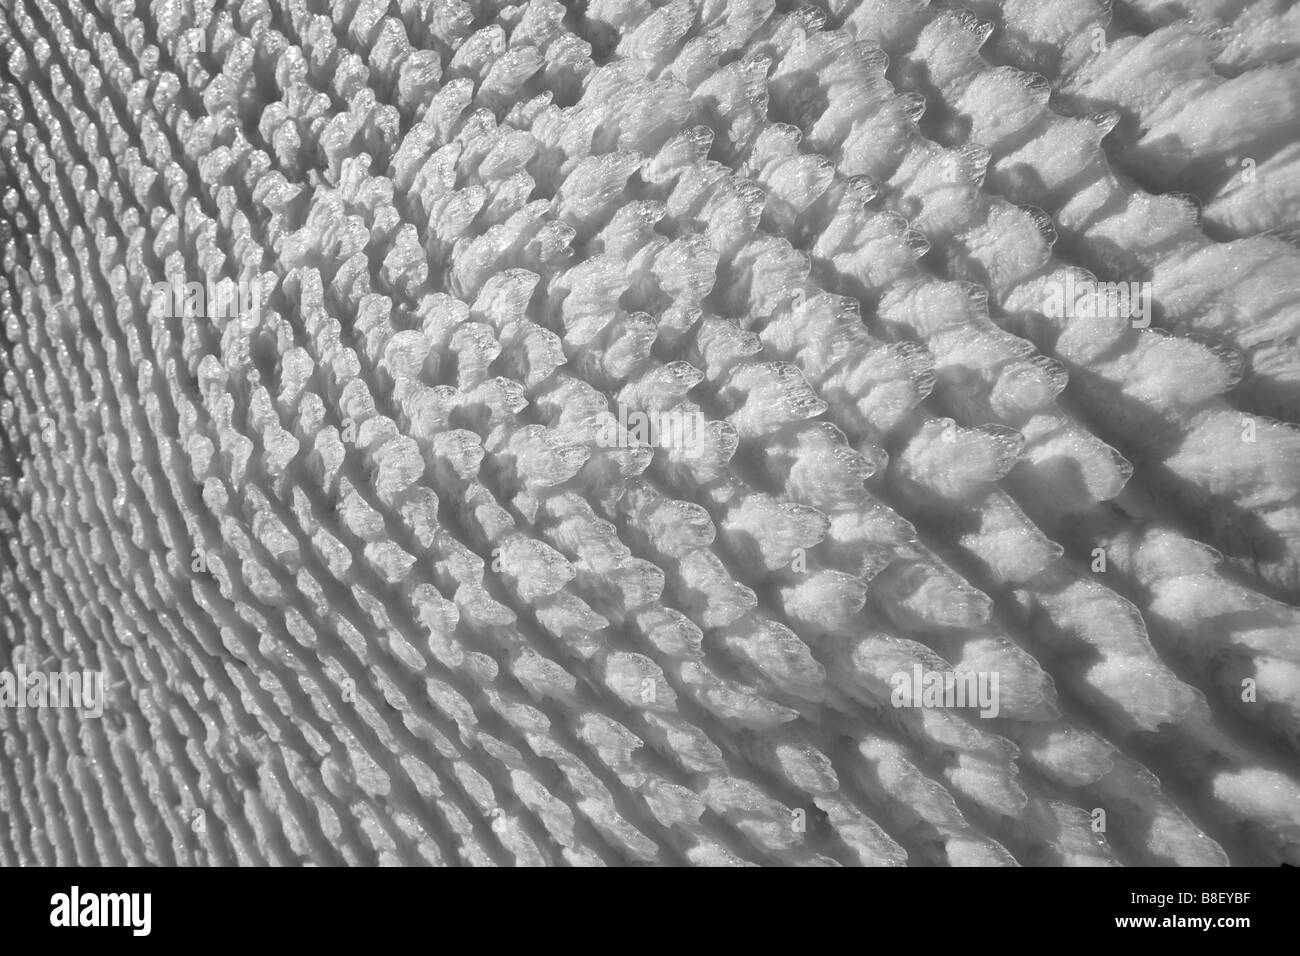 Naturally ice scales gathered on a wire netting (Puy de Dôme - France). Ecailles de glace formées naturellement sur un grillage. Stock Photo